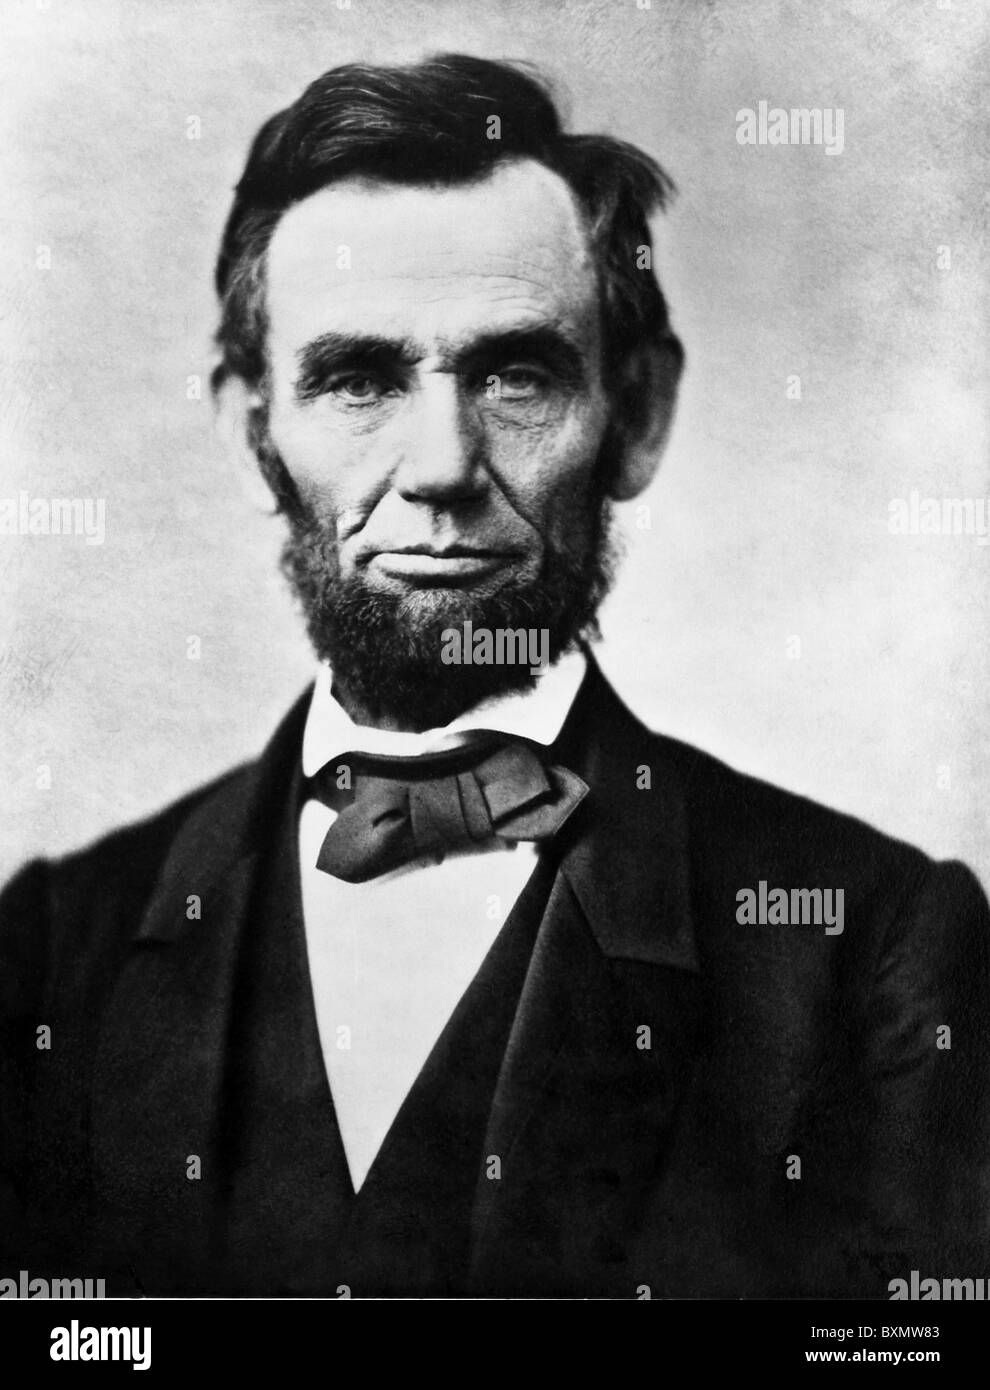 Abraham Lincoln, le 16e président des États-Unis d'Amérique Banque D'Images